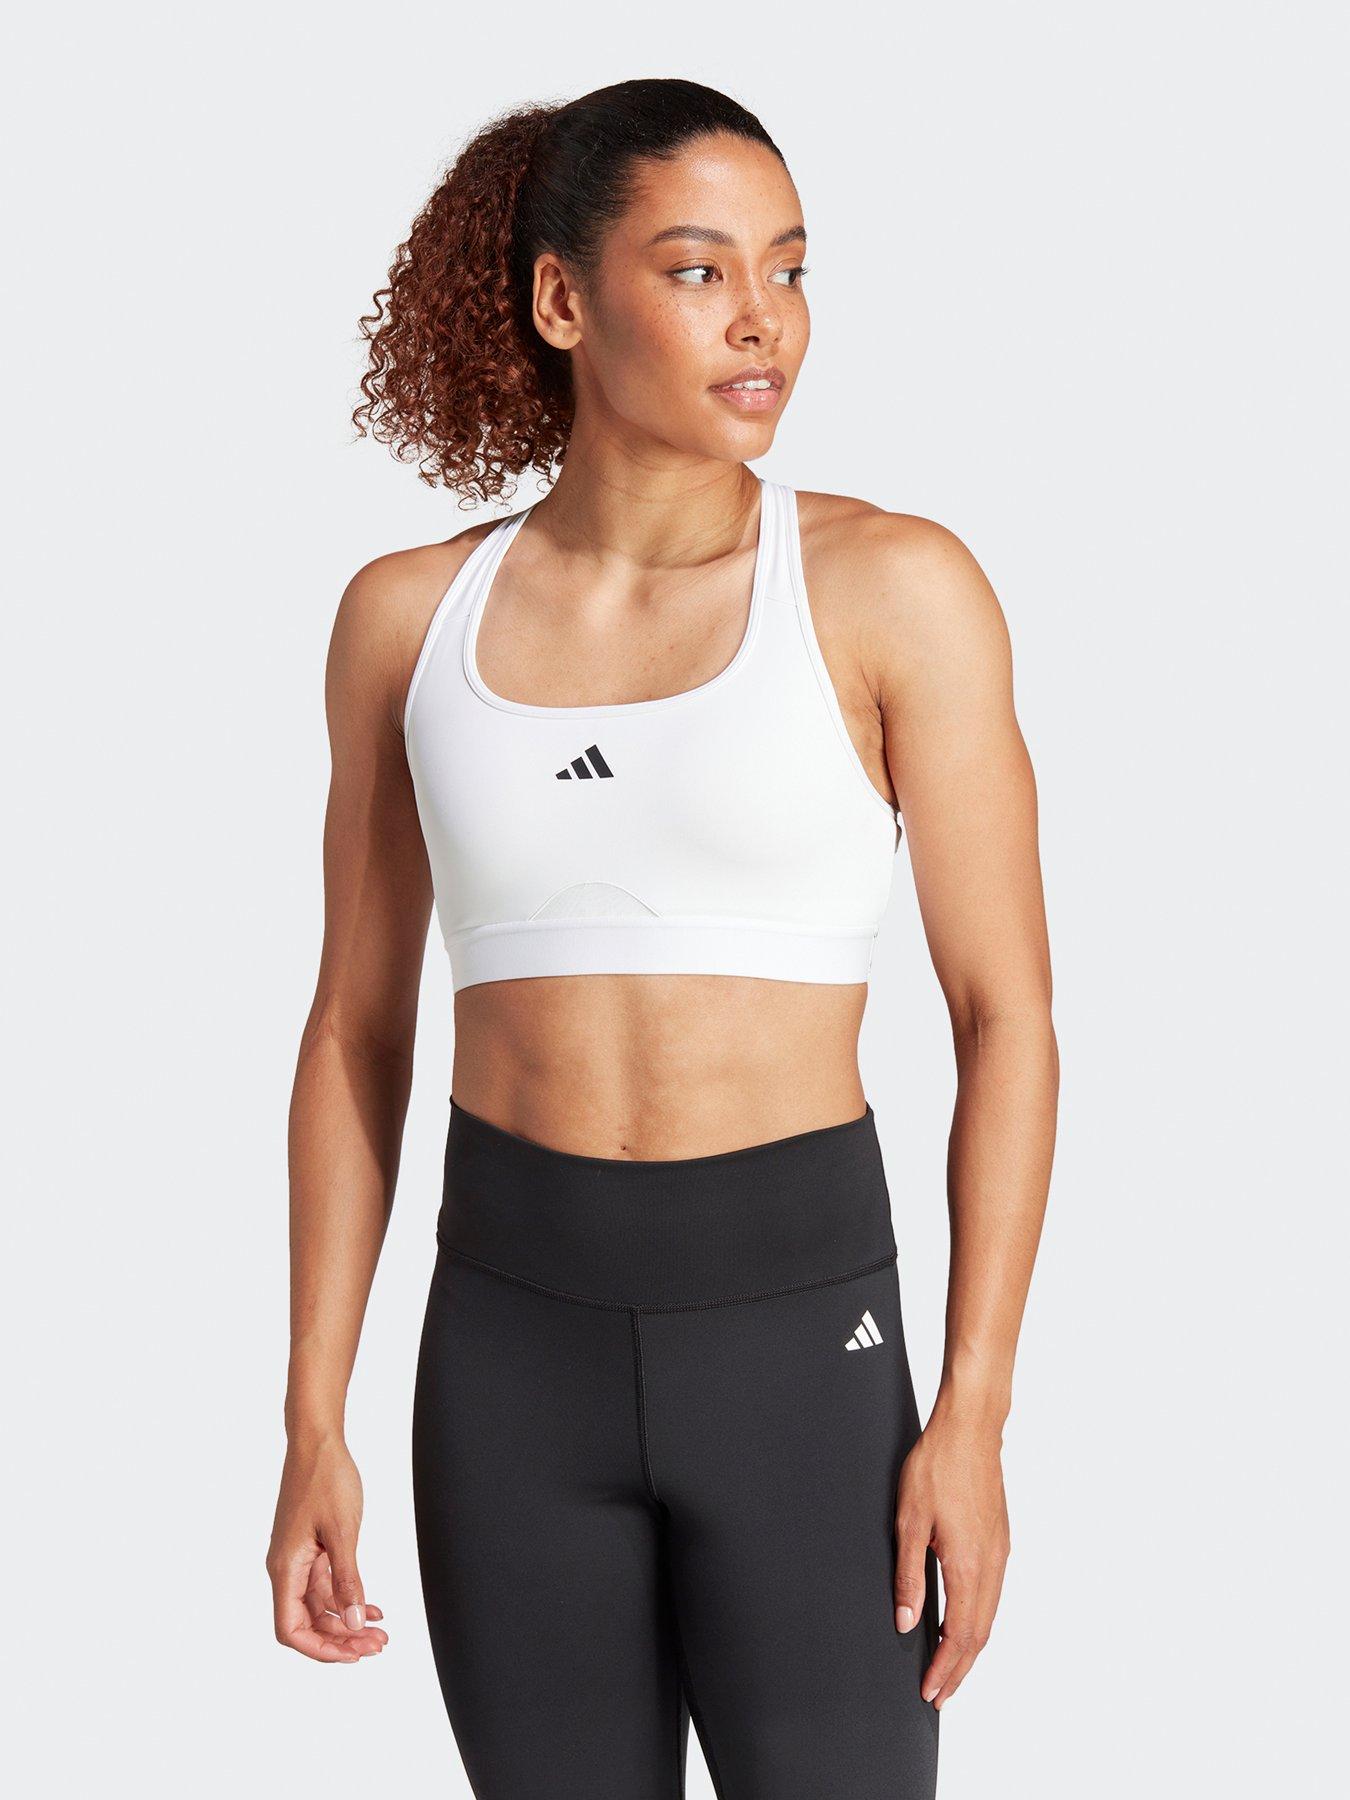 adidas Training Plus 3 Stripe design mid-support sports bra in dark white